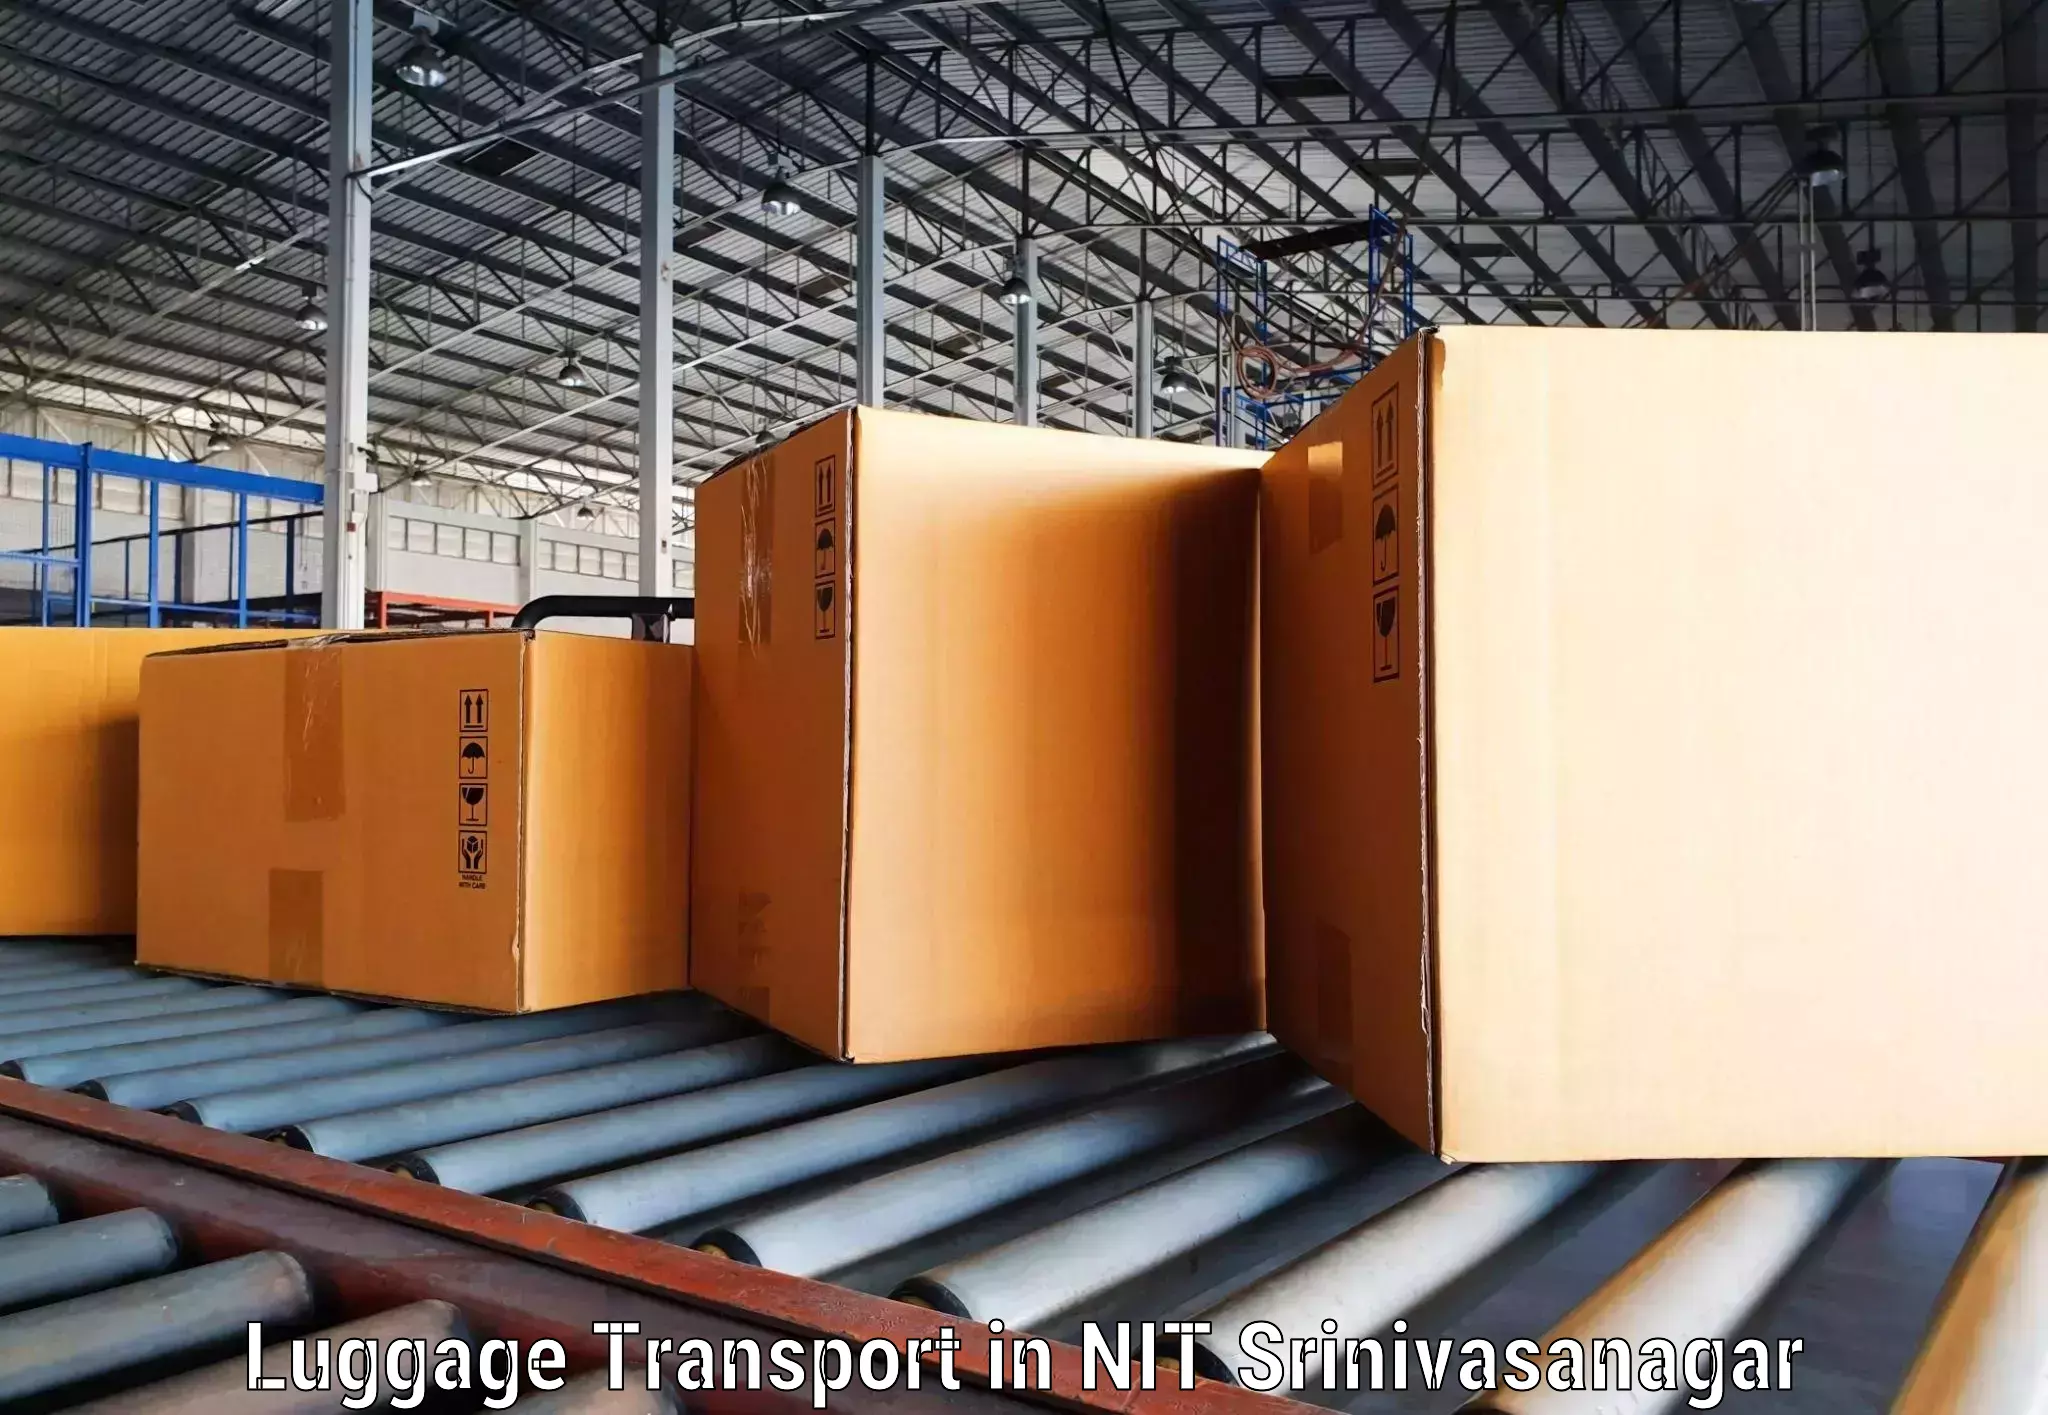 Domestic luggage transport in NIT Srinivasanagar